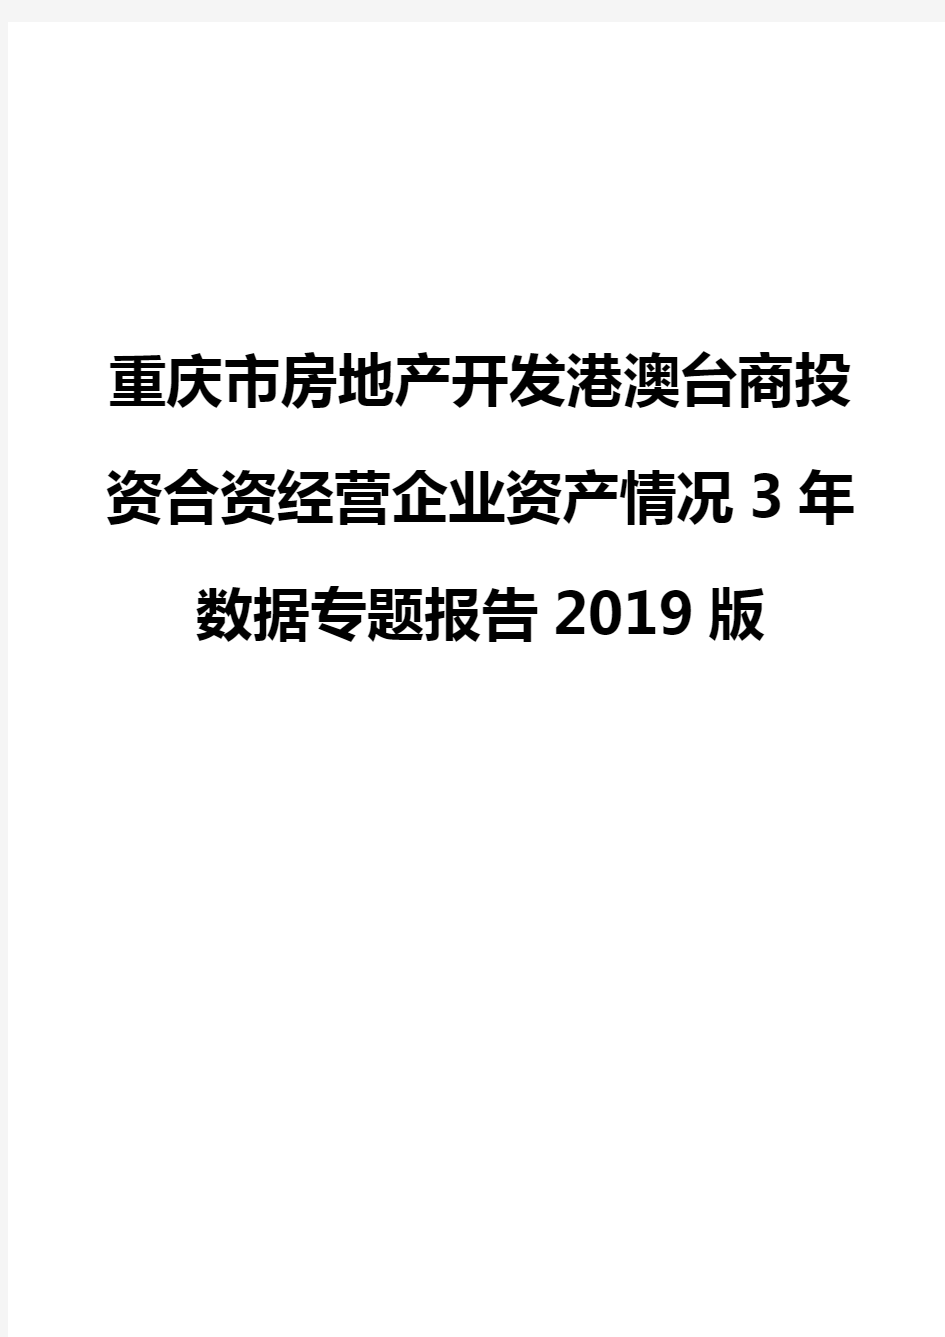 重庆市房地产开发港澳台商投资合资经营企业资产情况3年数据专题报告2019版